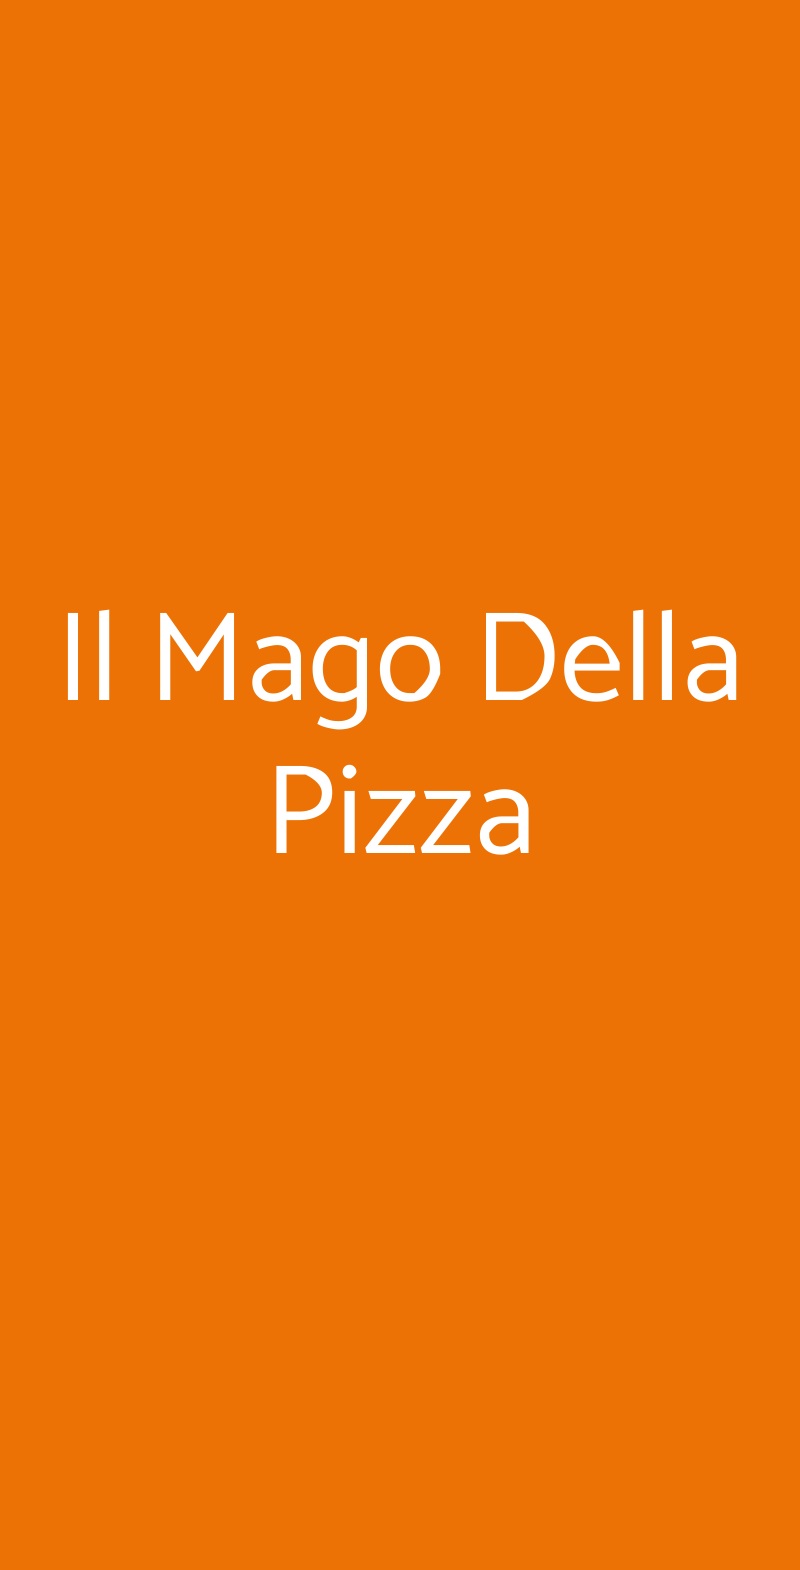 Il Mago Della Pizza Torino menù 1 pagina